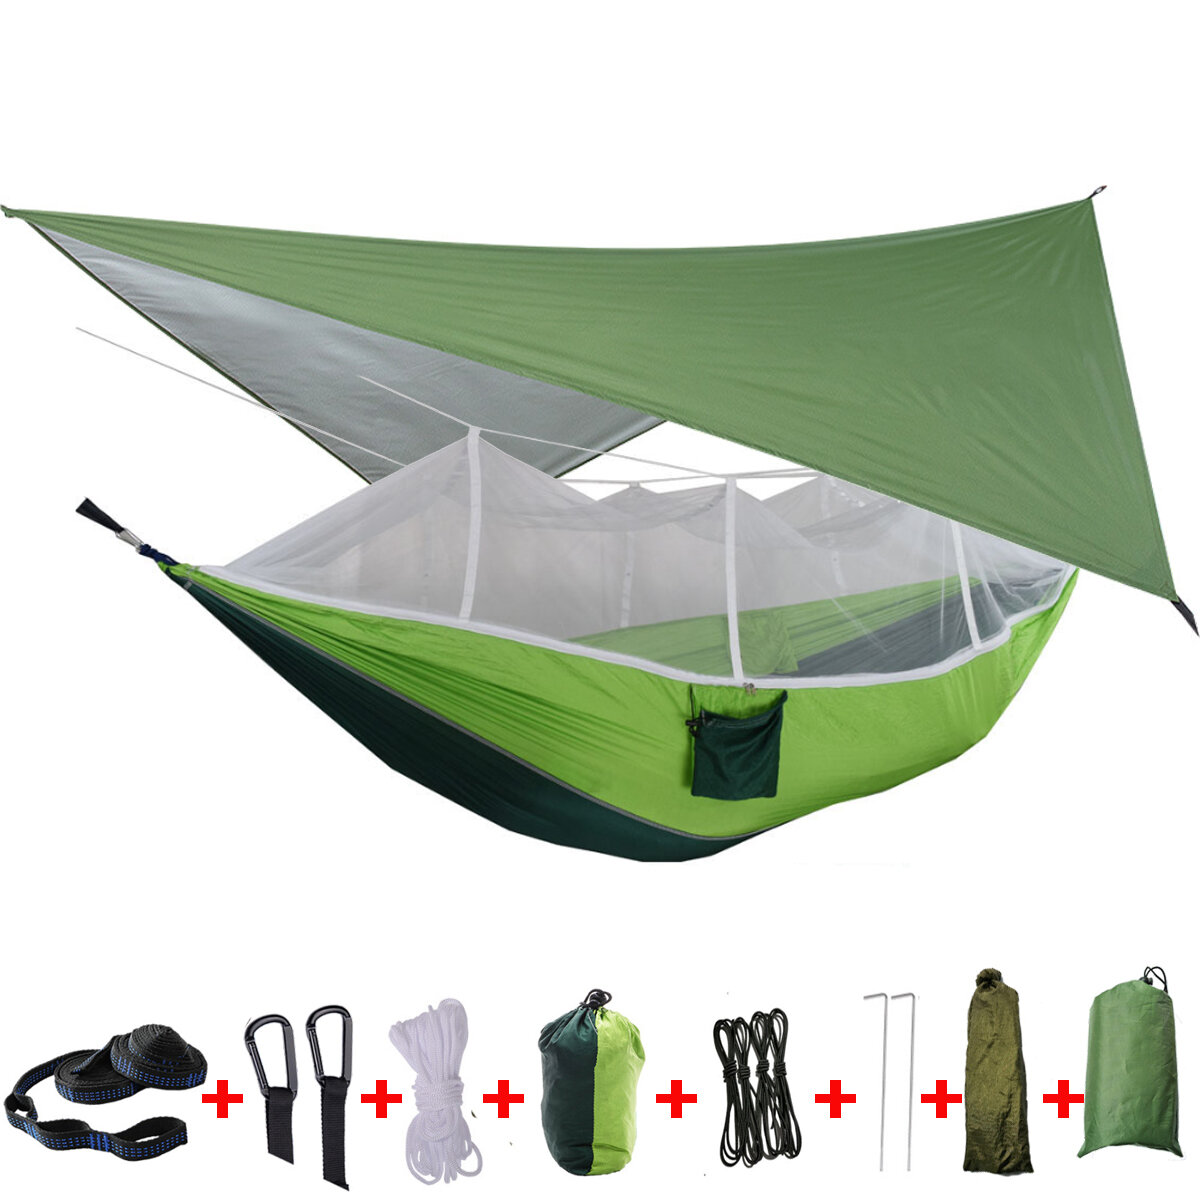 IPRee® 2-Personen-Camping-Hängematte mit Moskitonetz, Regenschutz und doppeltem Hängebett für Outdoor-Reisen